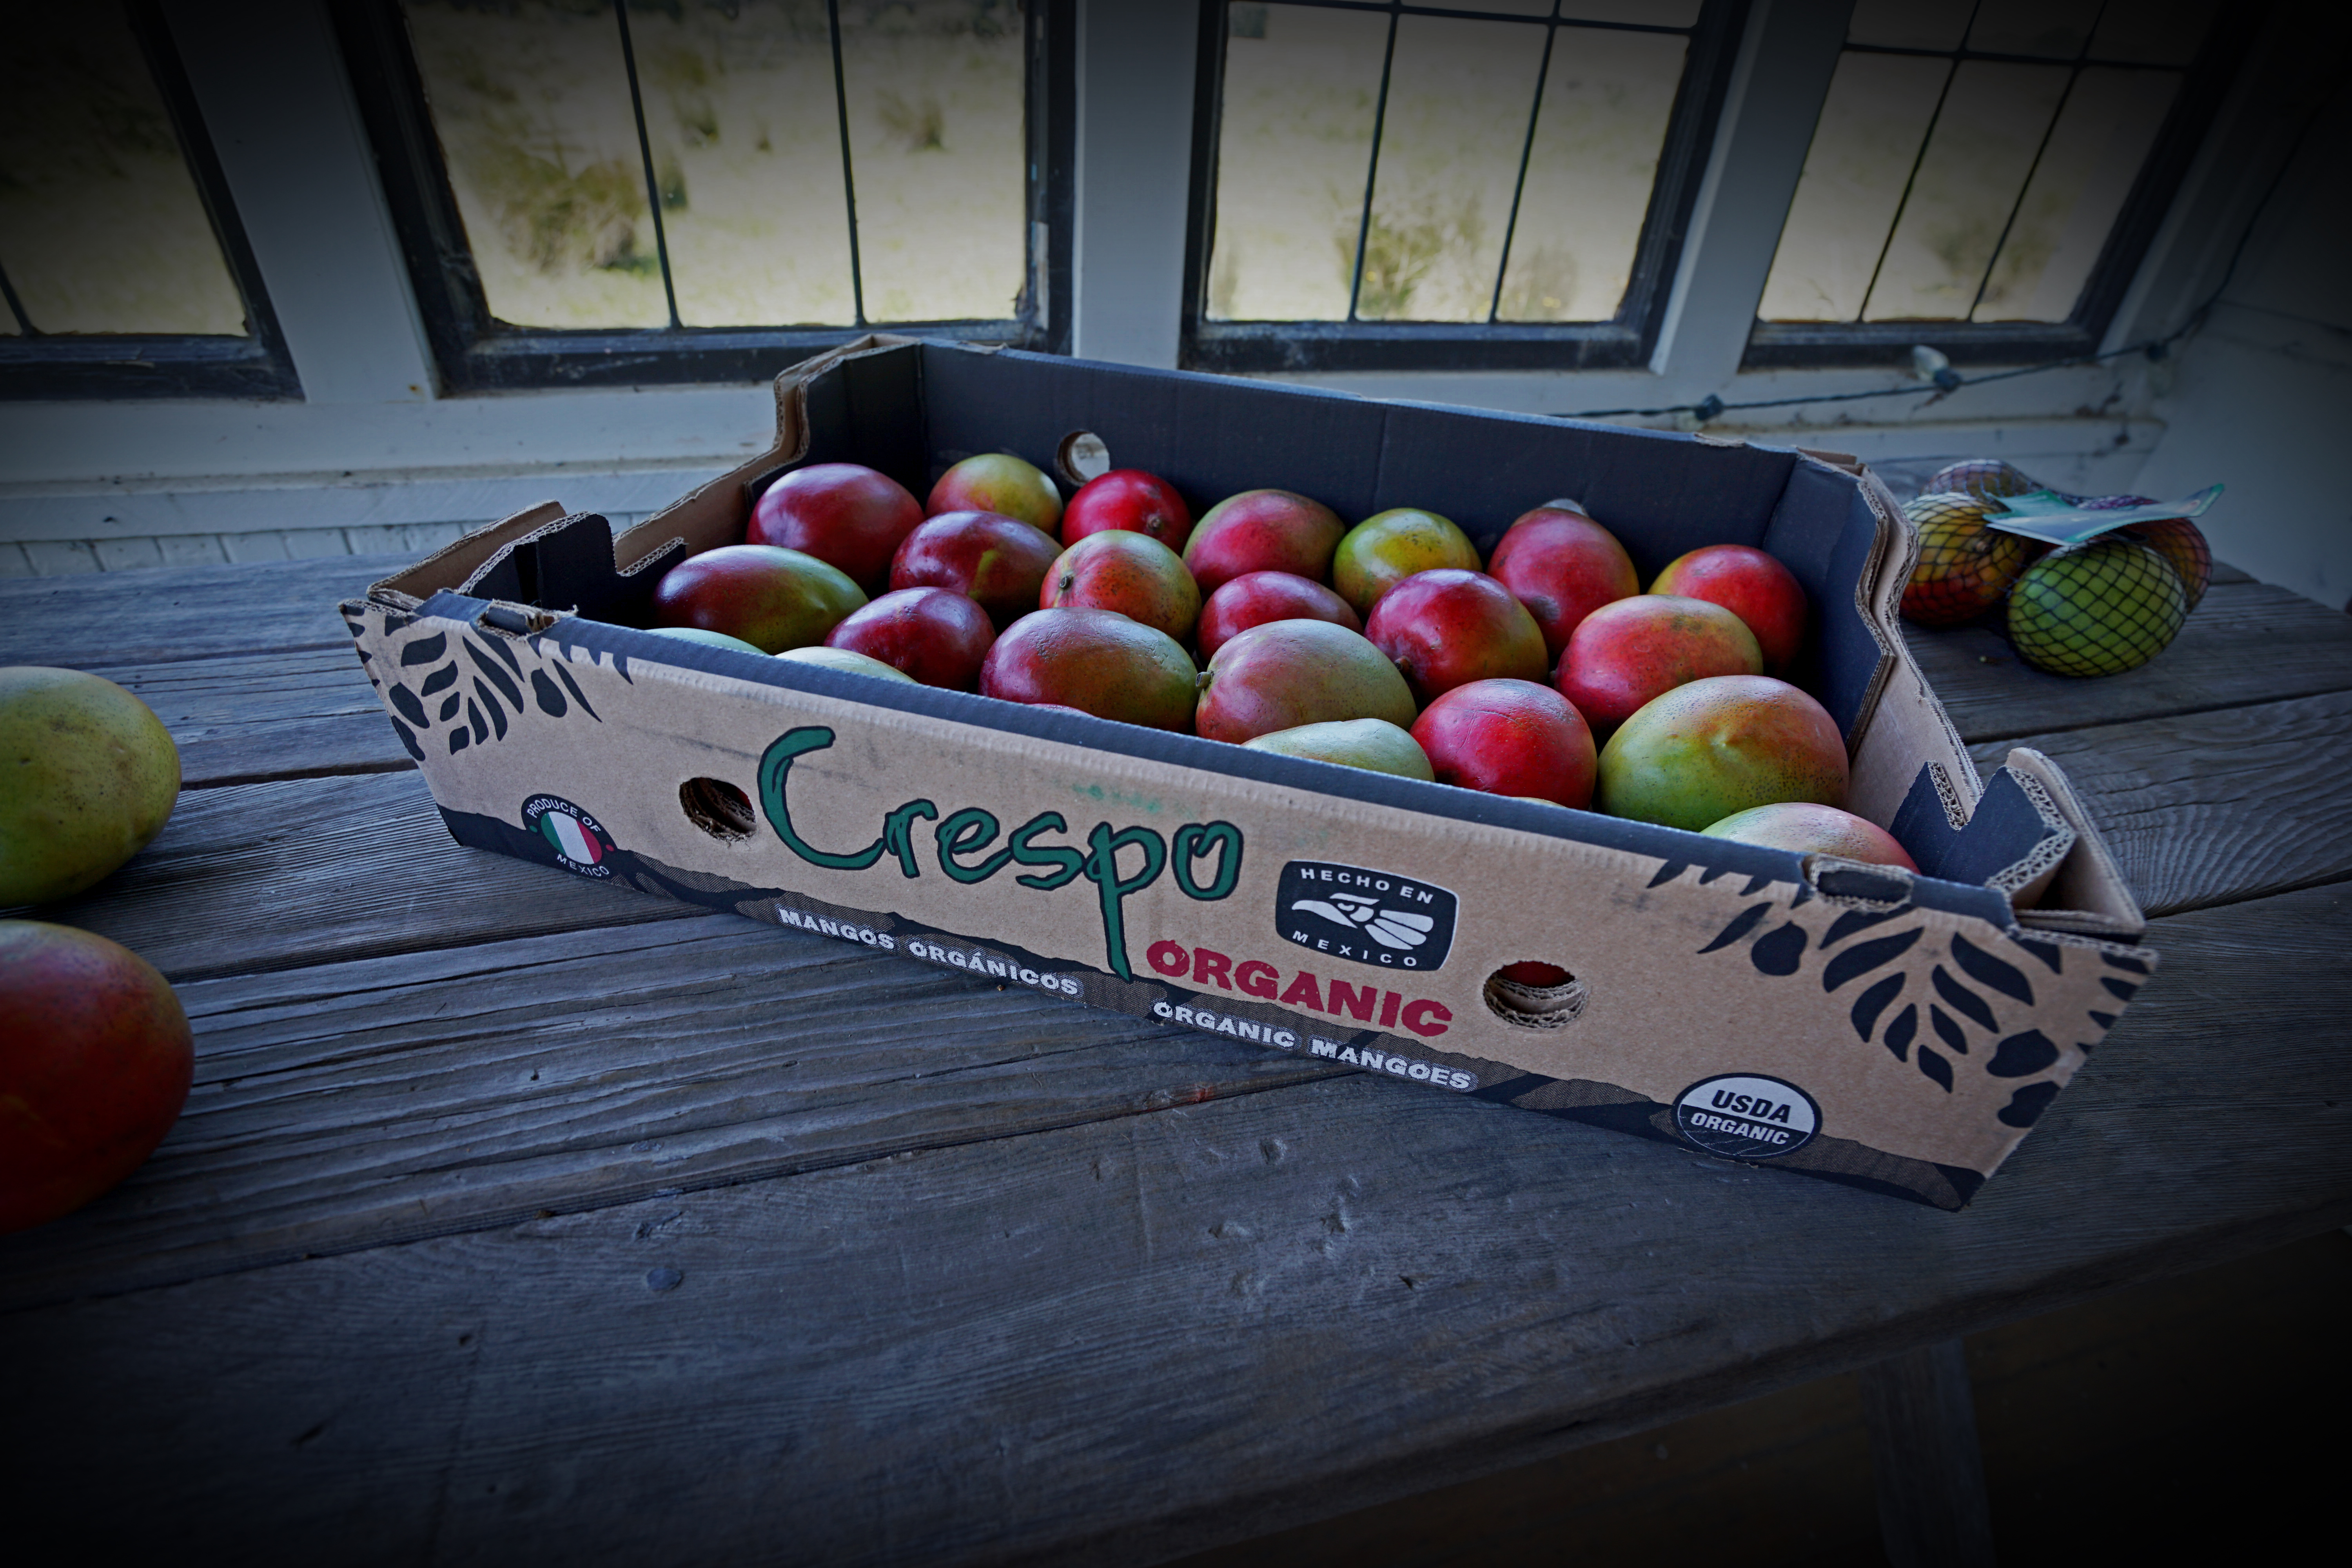 The Crespo Big Box!